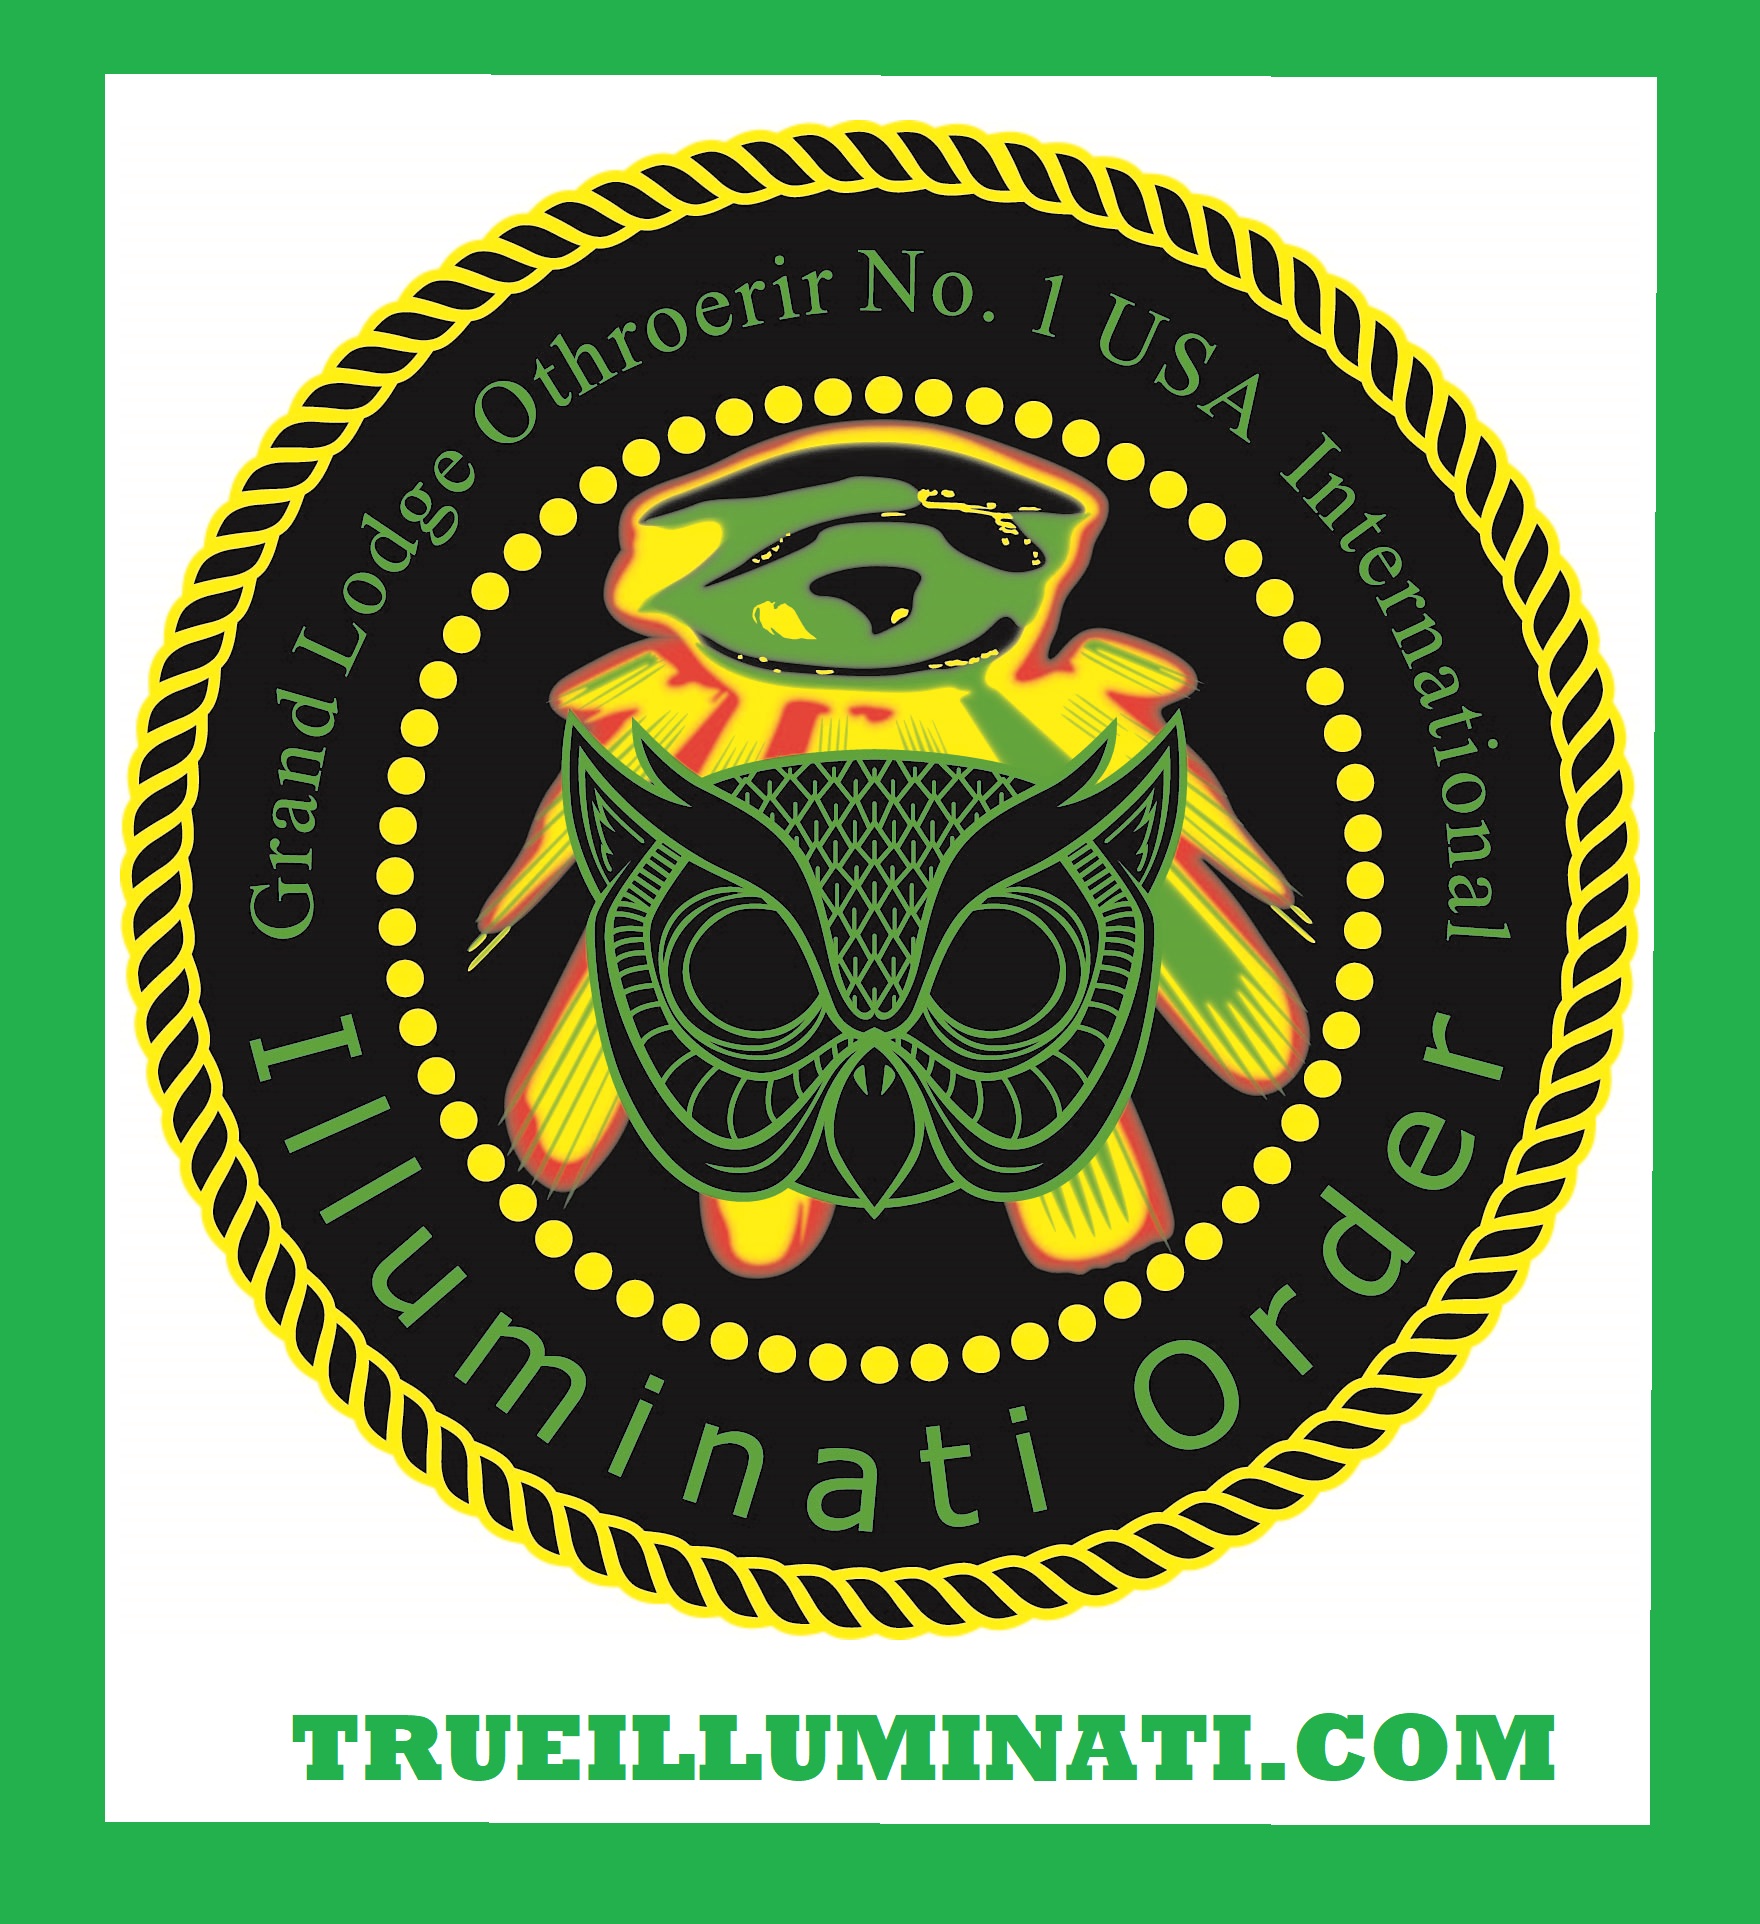 The Authentic Real Illuminati Order